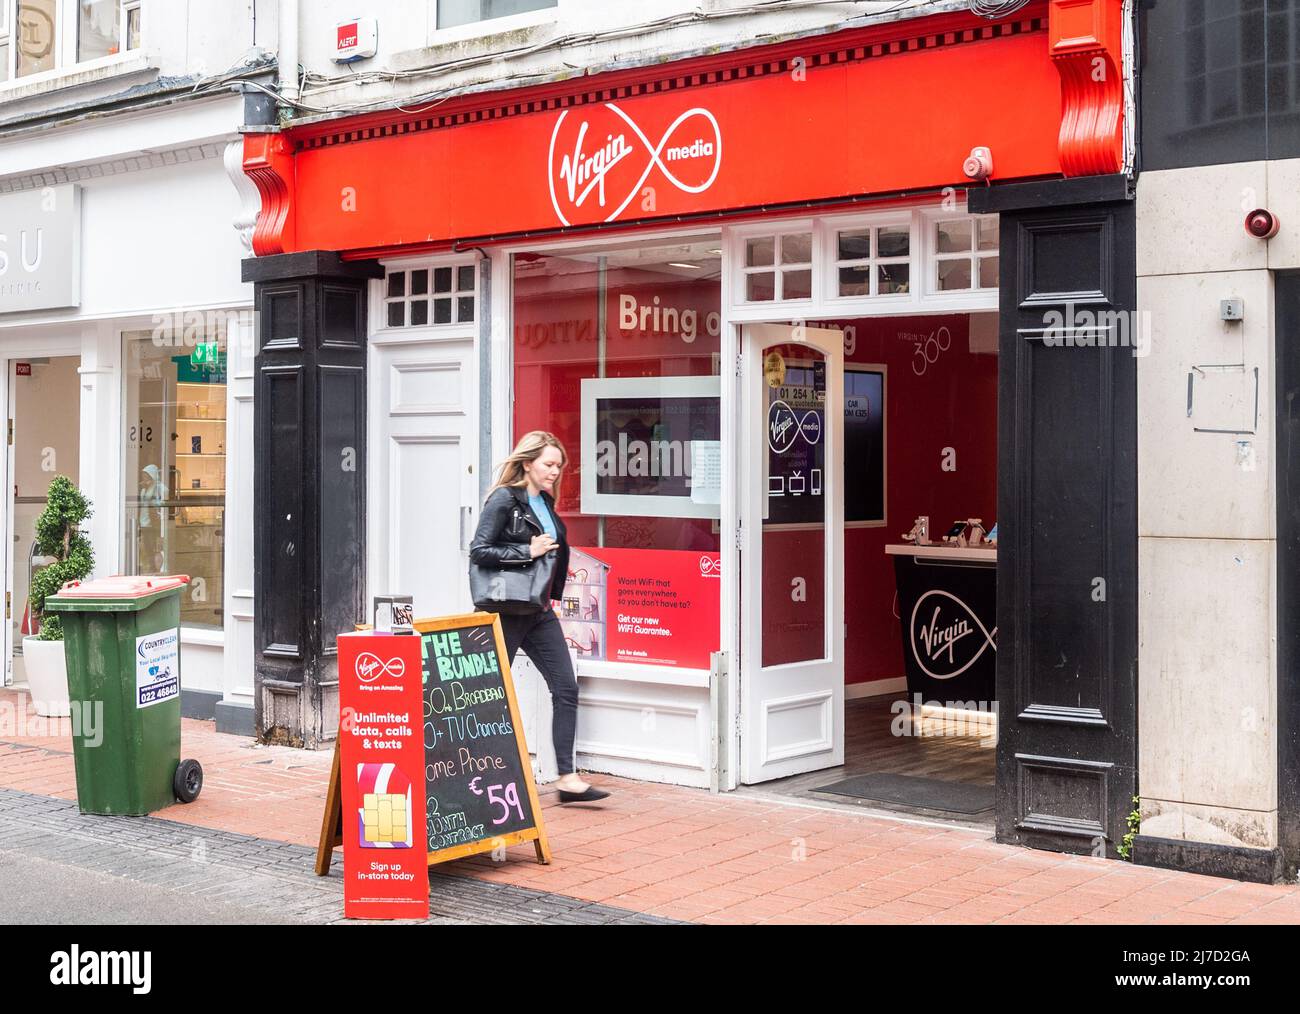 Boutique de téléphonie Virgin Media sur Oliver Plunkett Street, Cork, Irlande. Banque D'Images